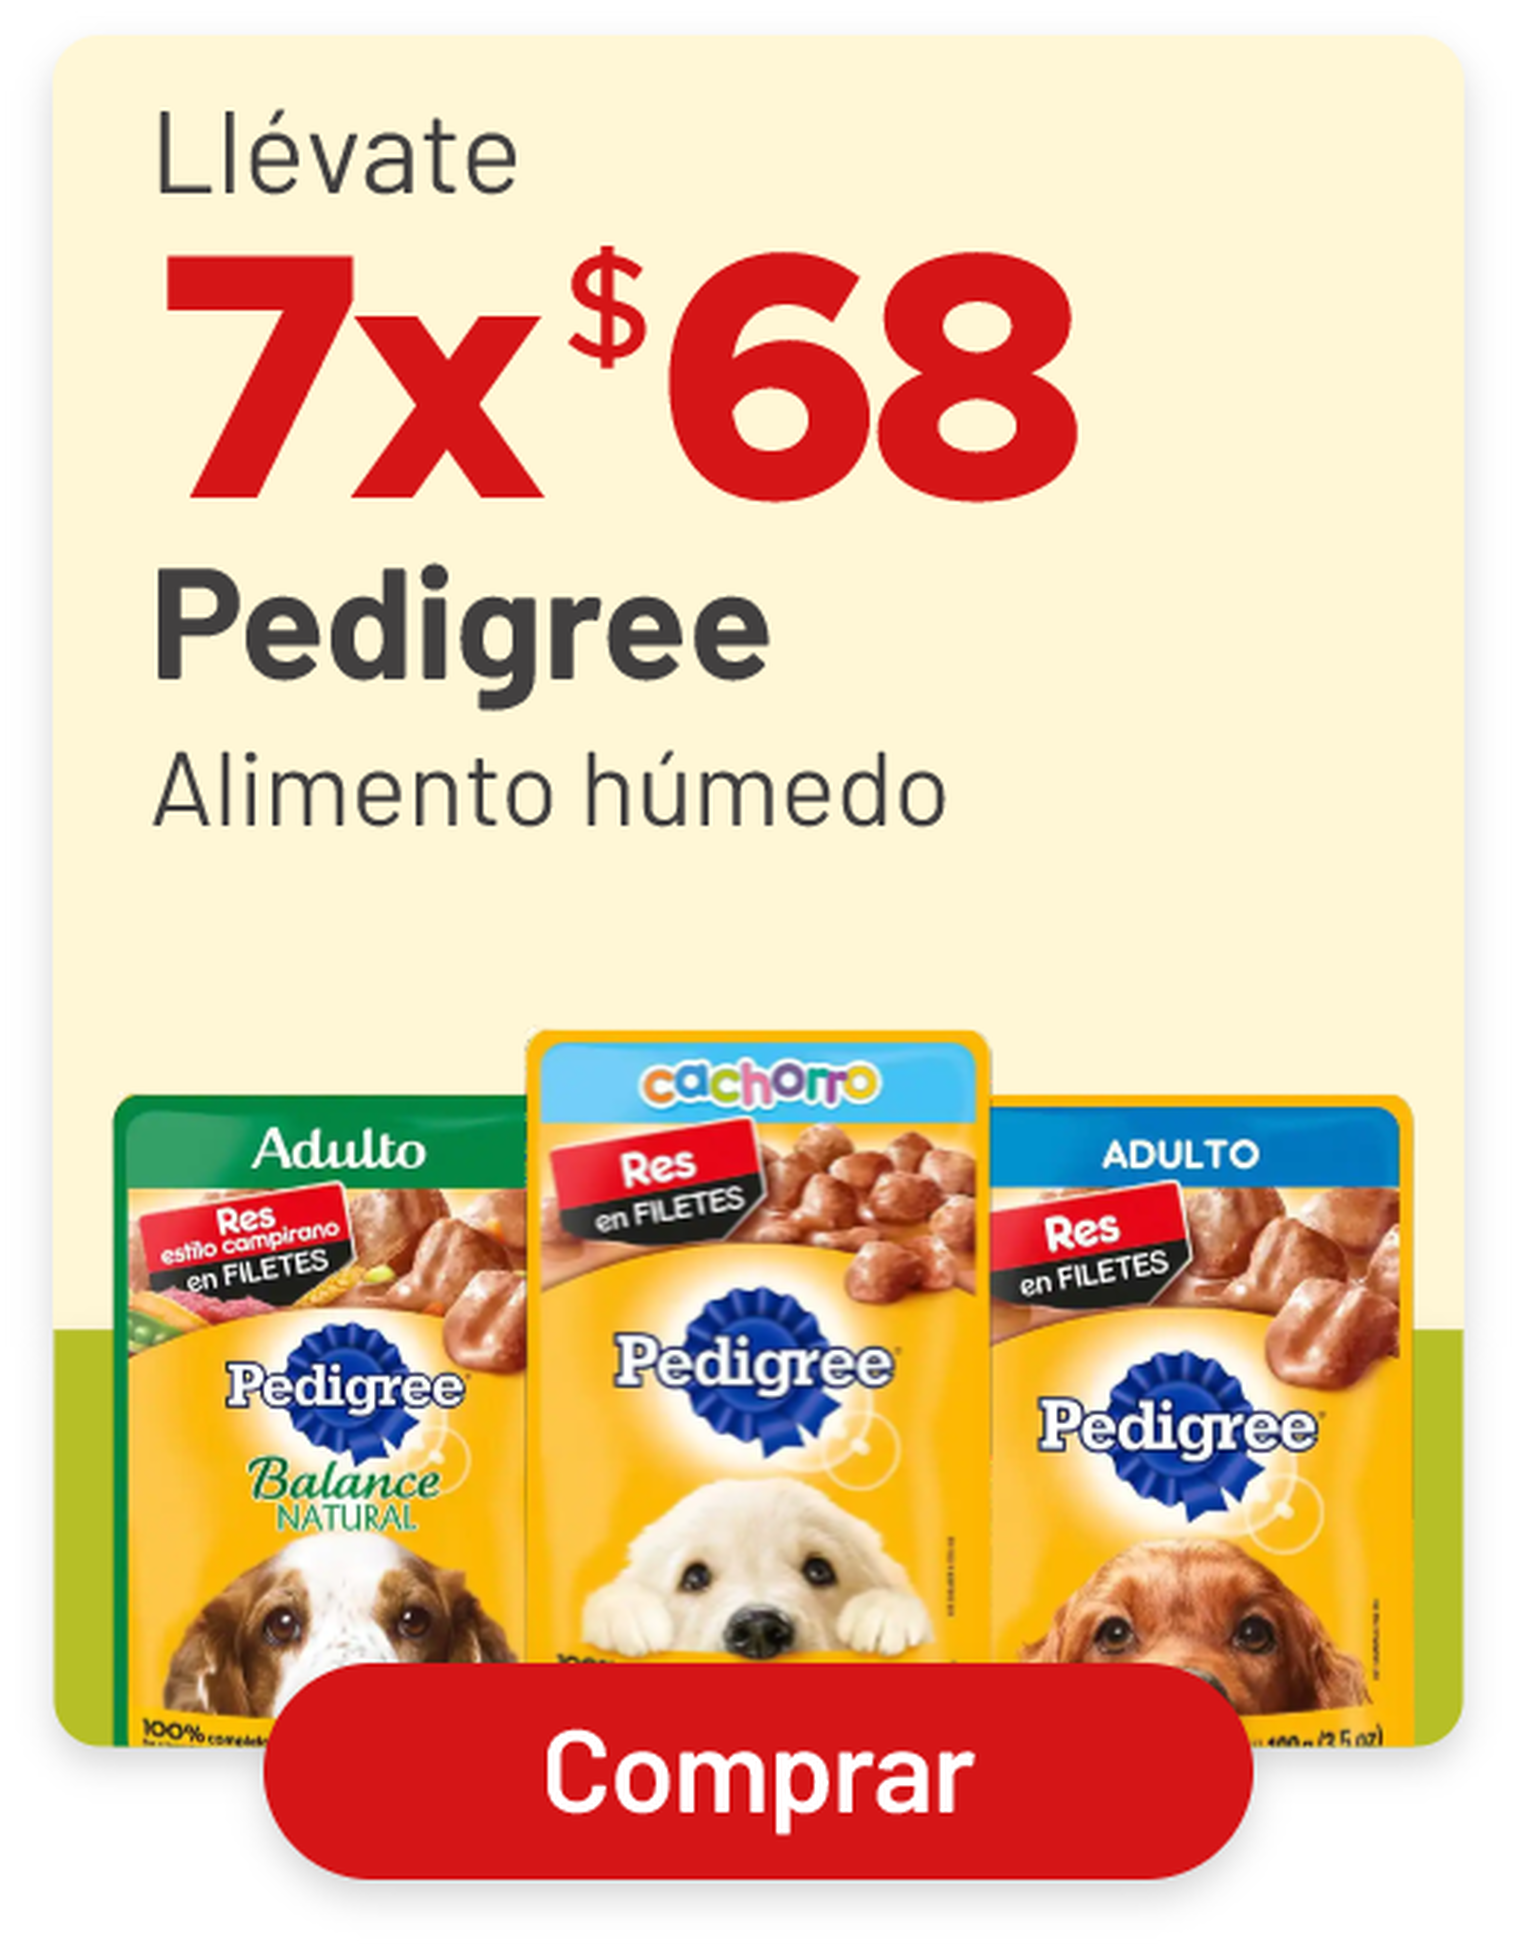 2x$68 Pedigree alimento húmedo